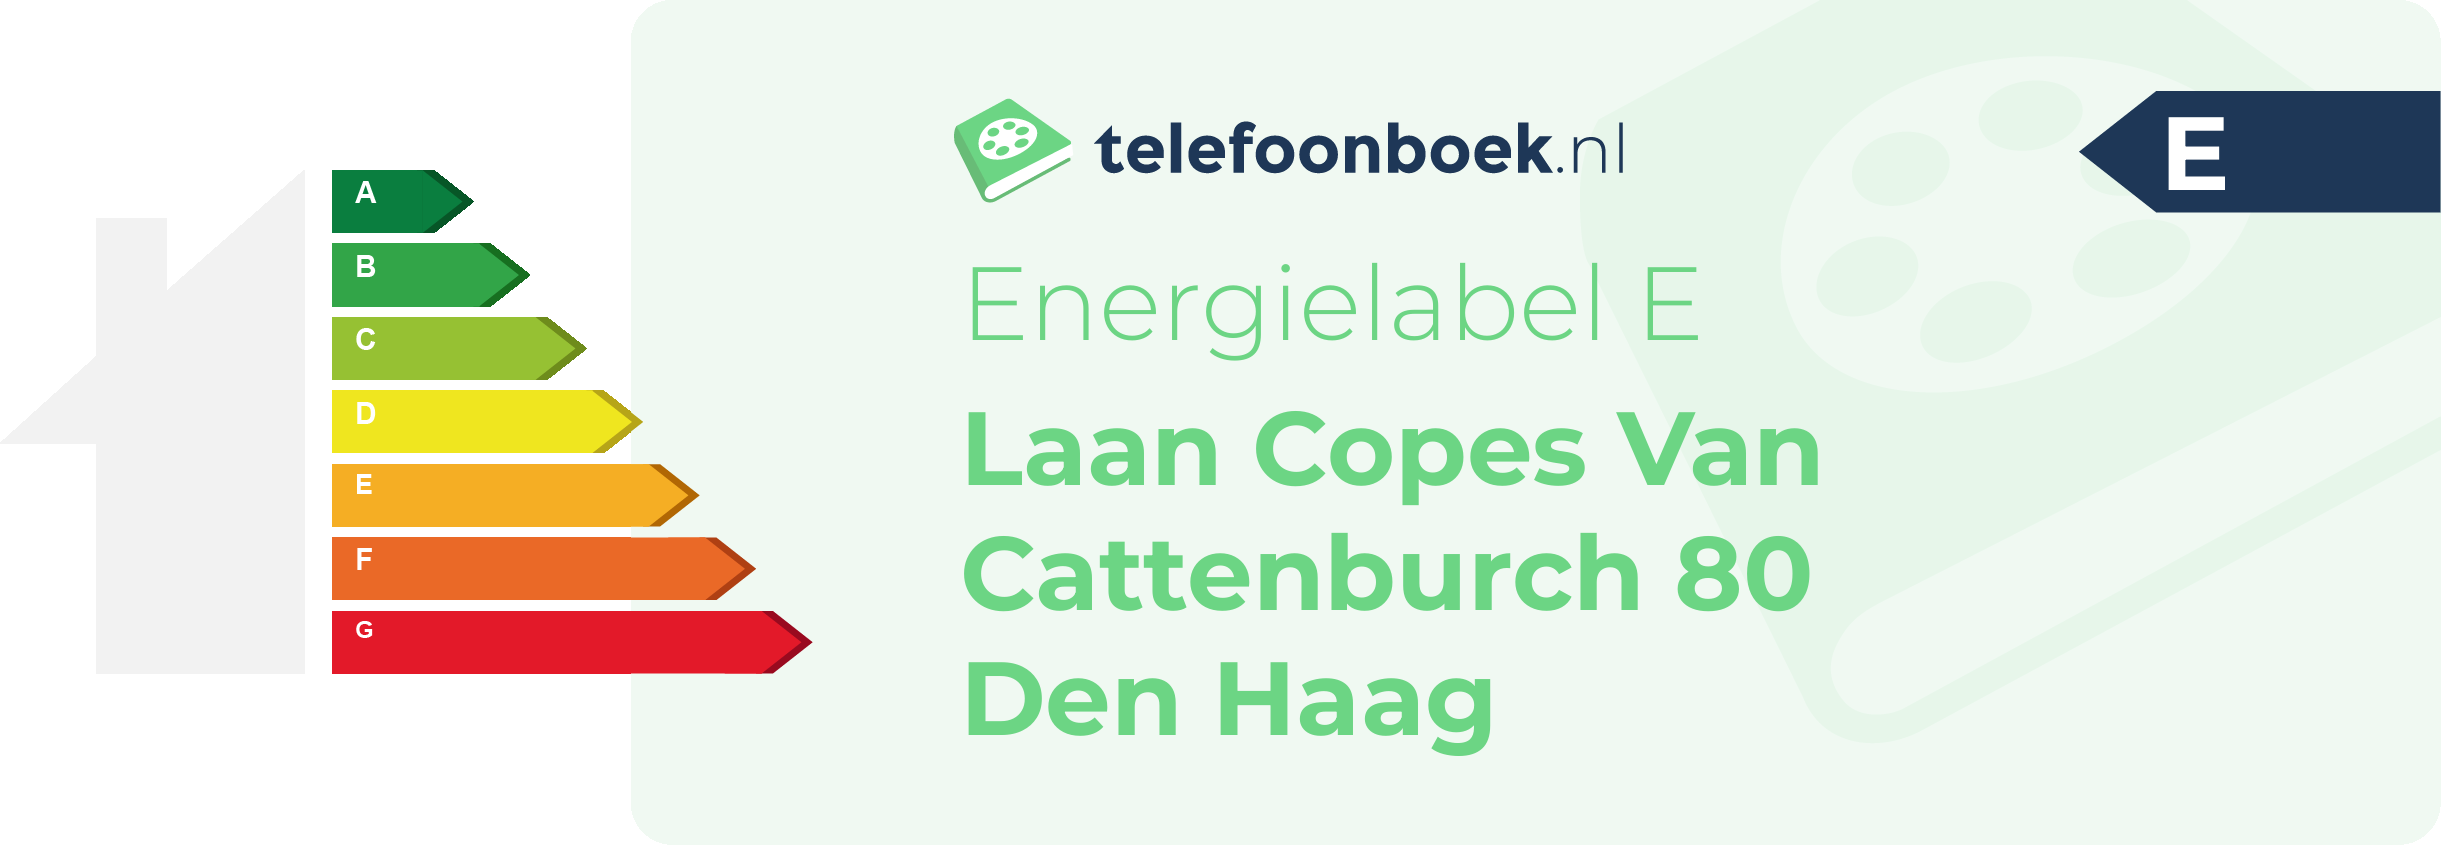 Energielabel Laan Copes Van Cattenburch 80 Den Haag